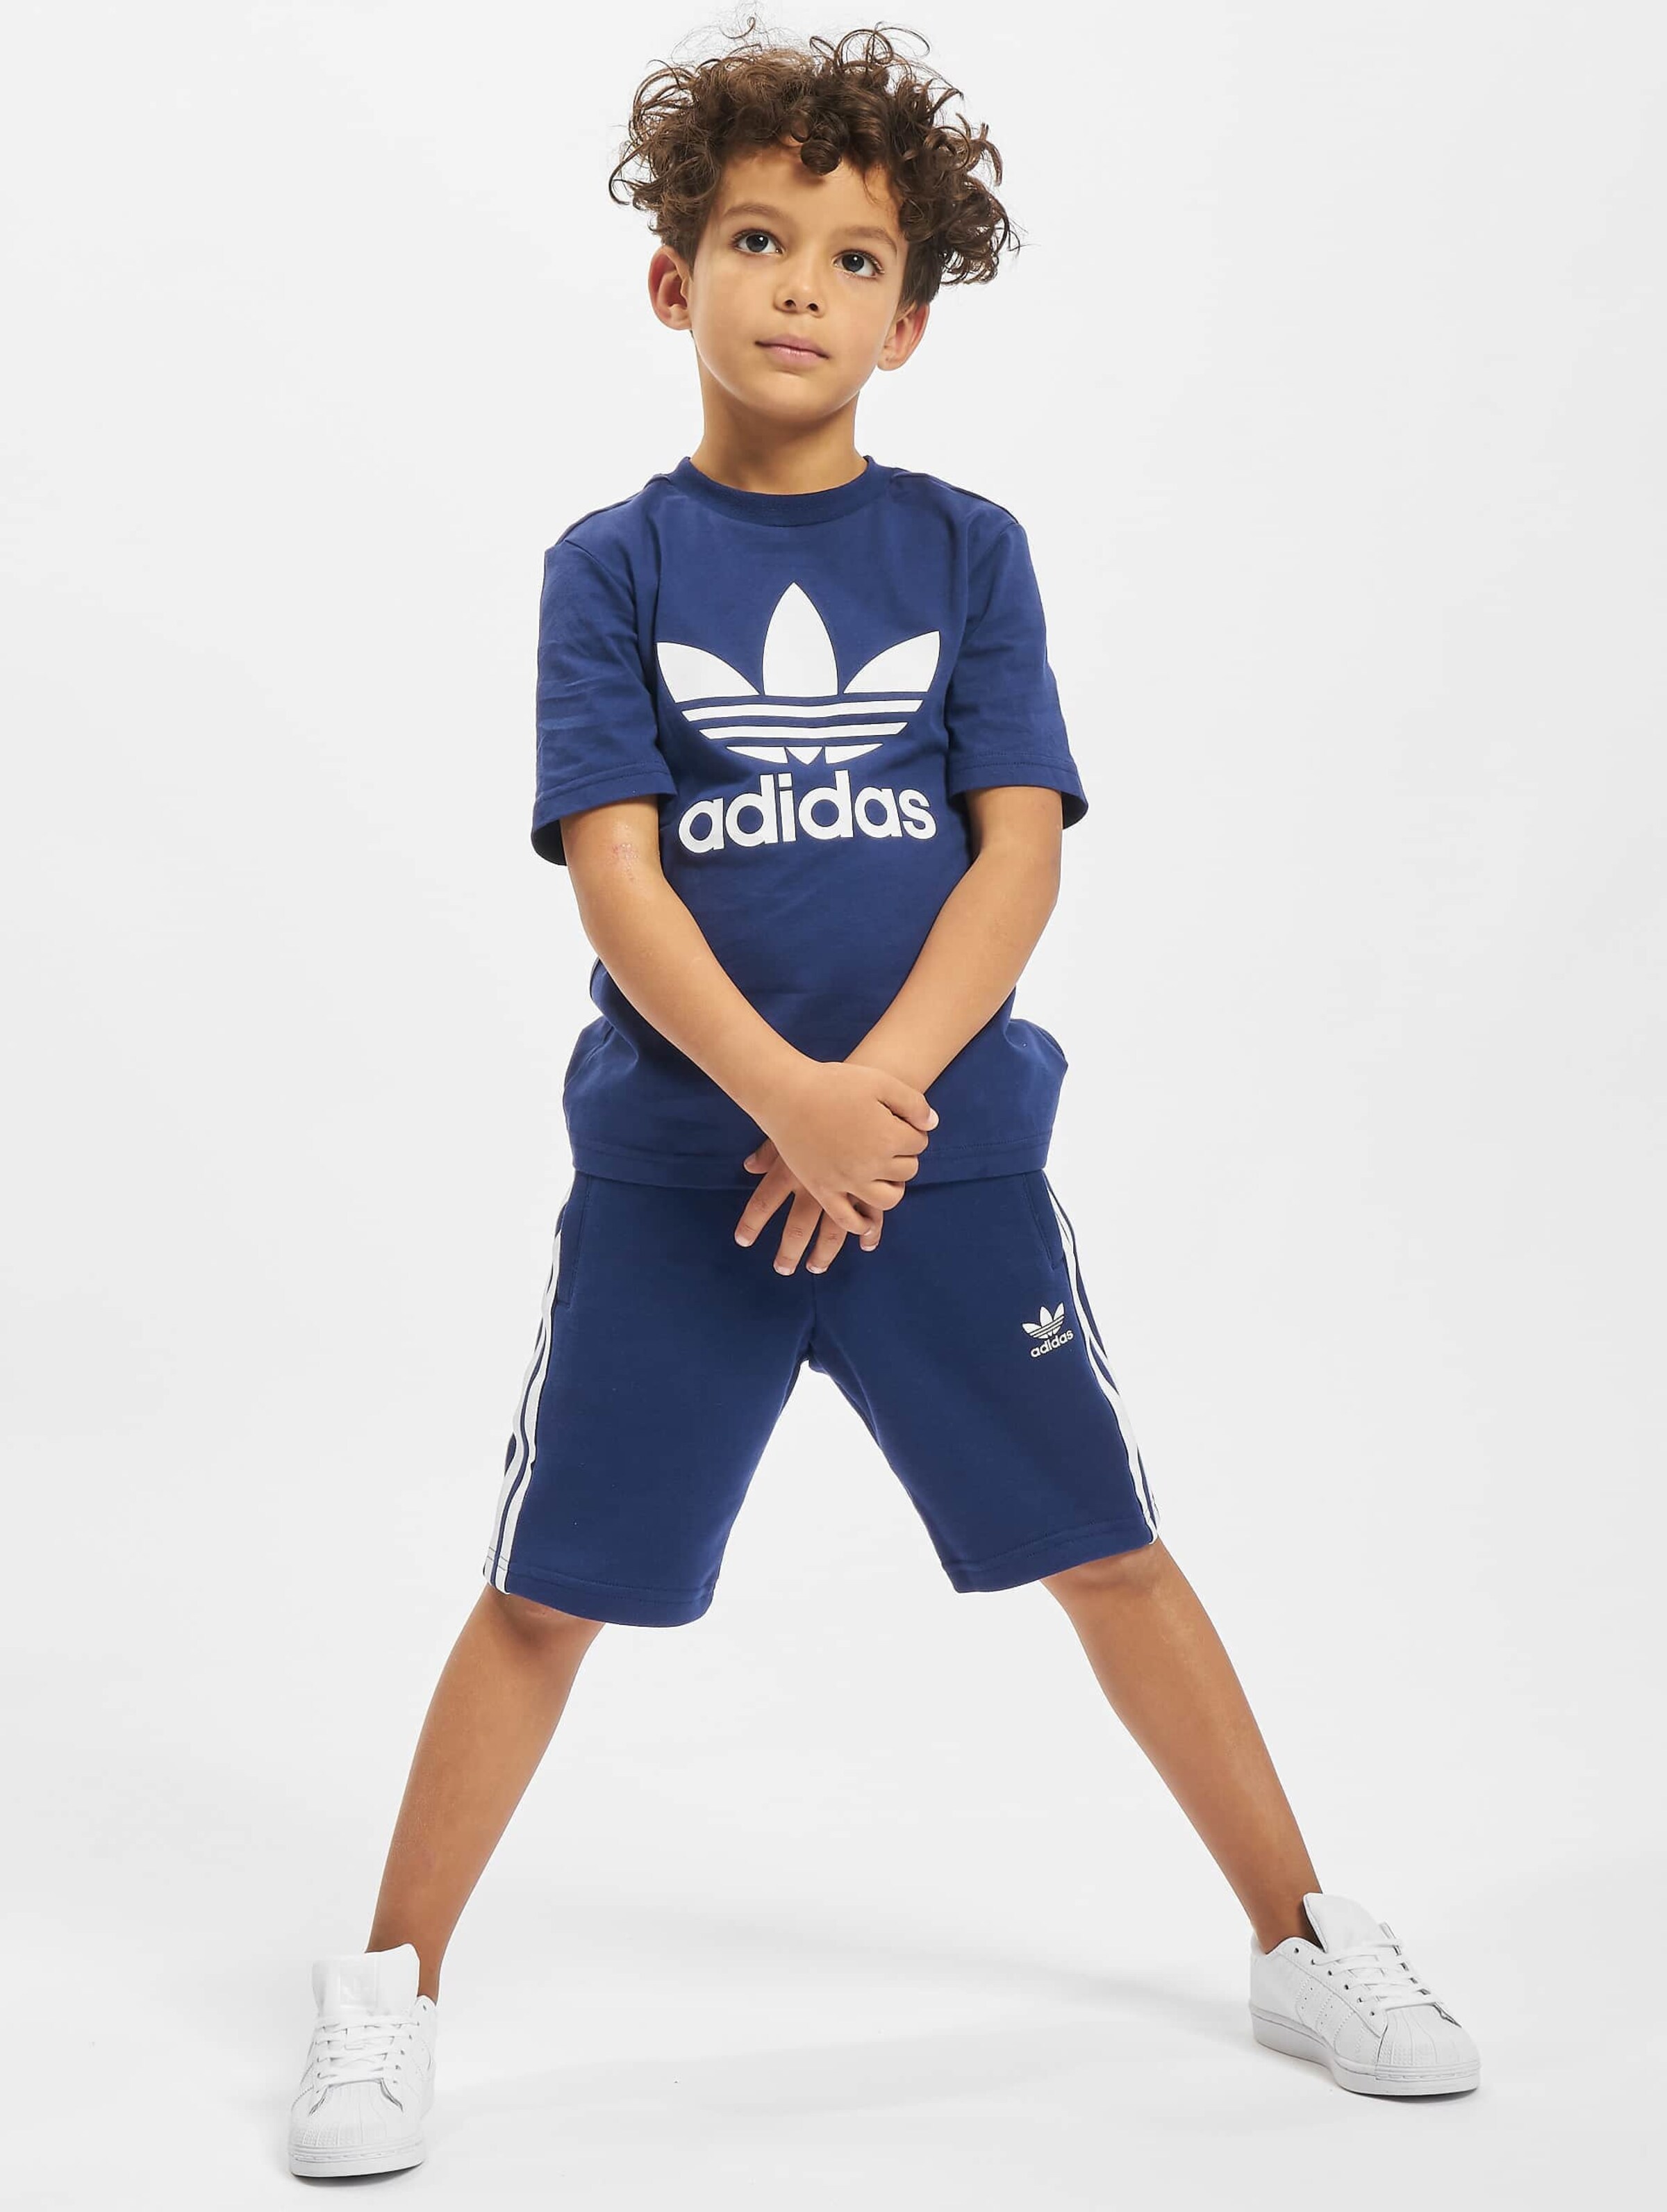 adidas Originals Mini-Kit Kinderen op kleur blauw, Maat 62